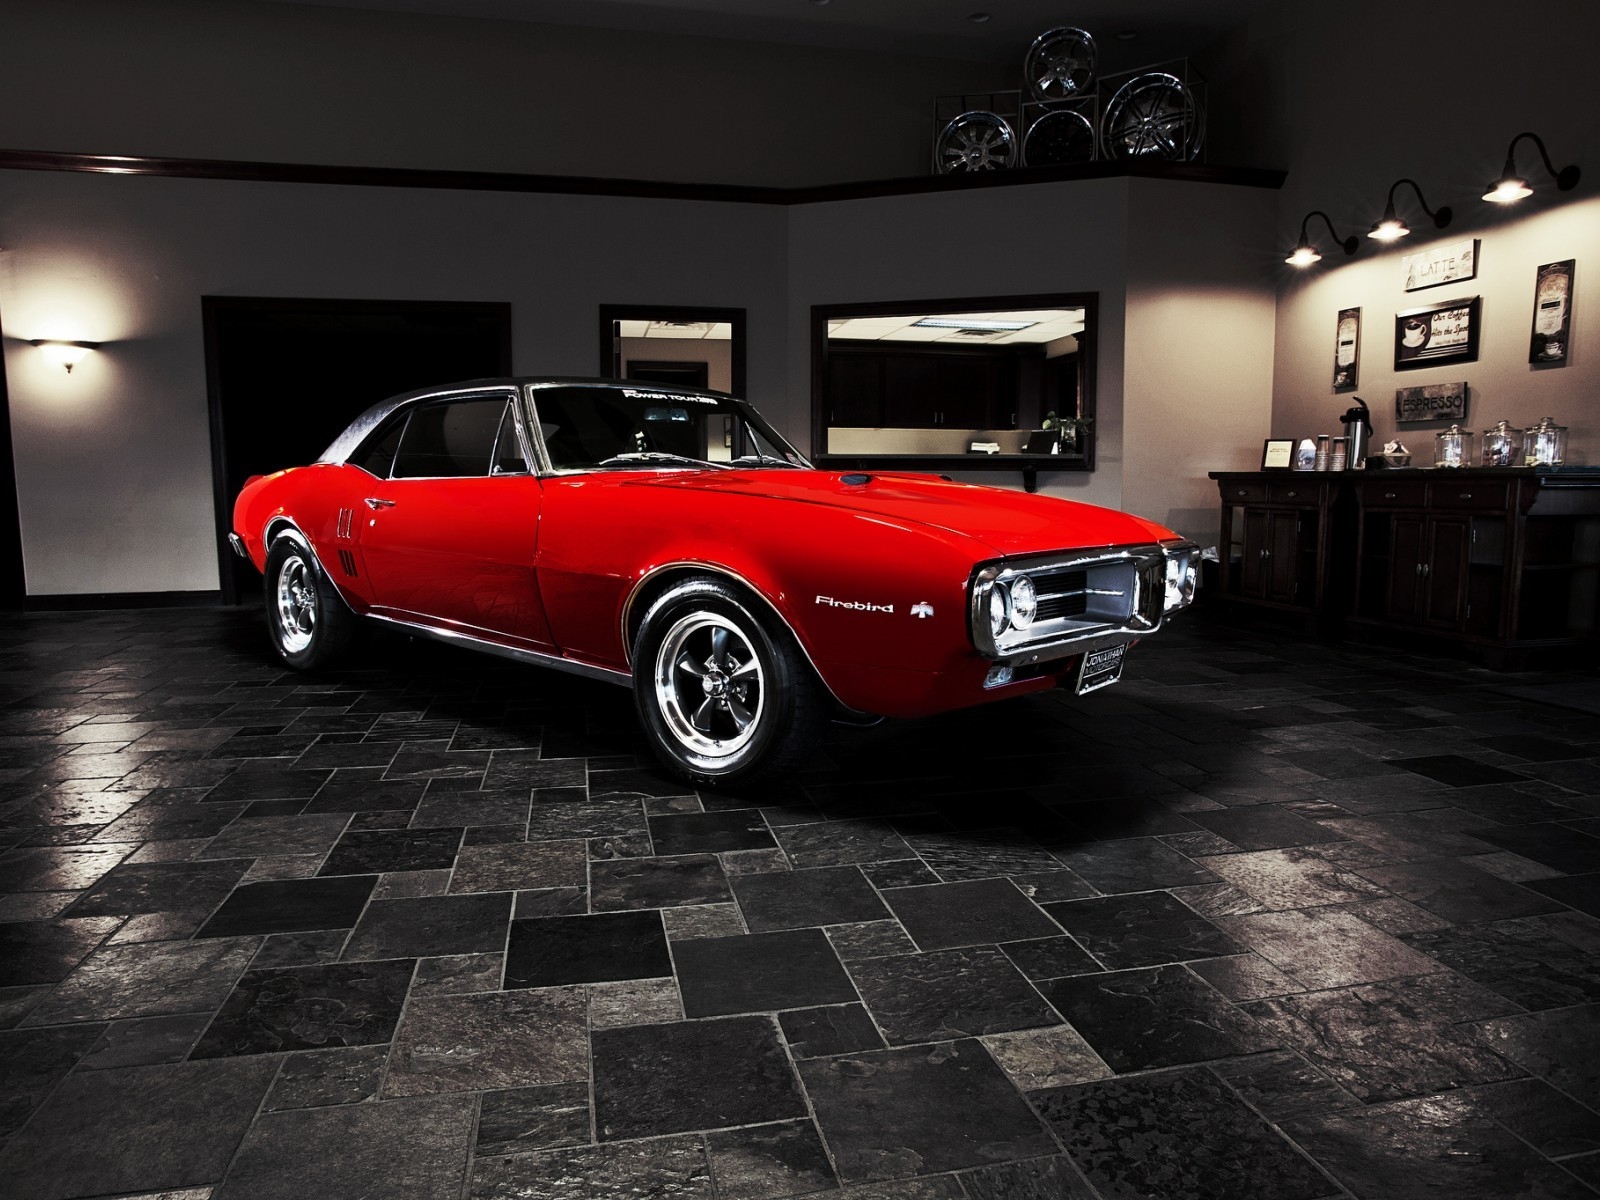 Pontiac Firebird 1967 for 1600 x 1200 resolution